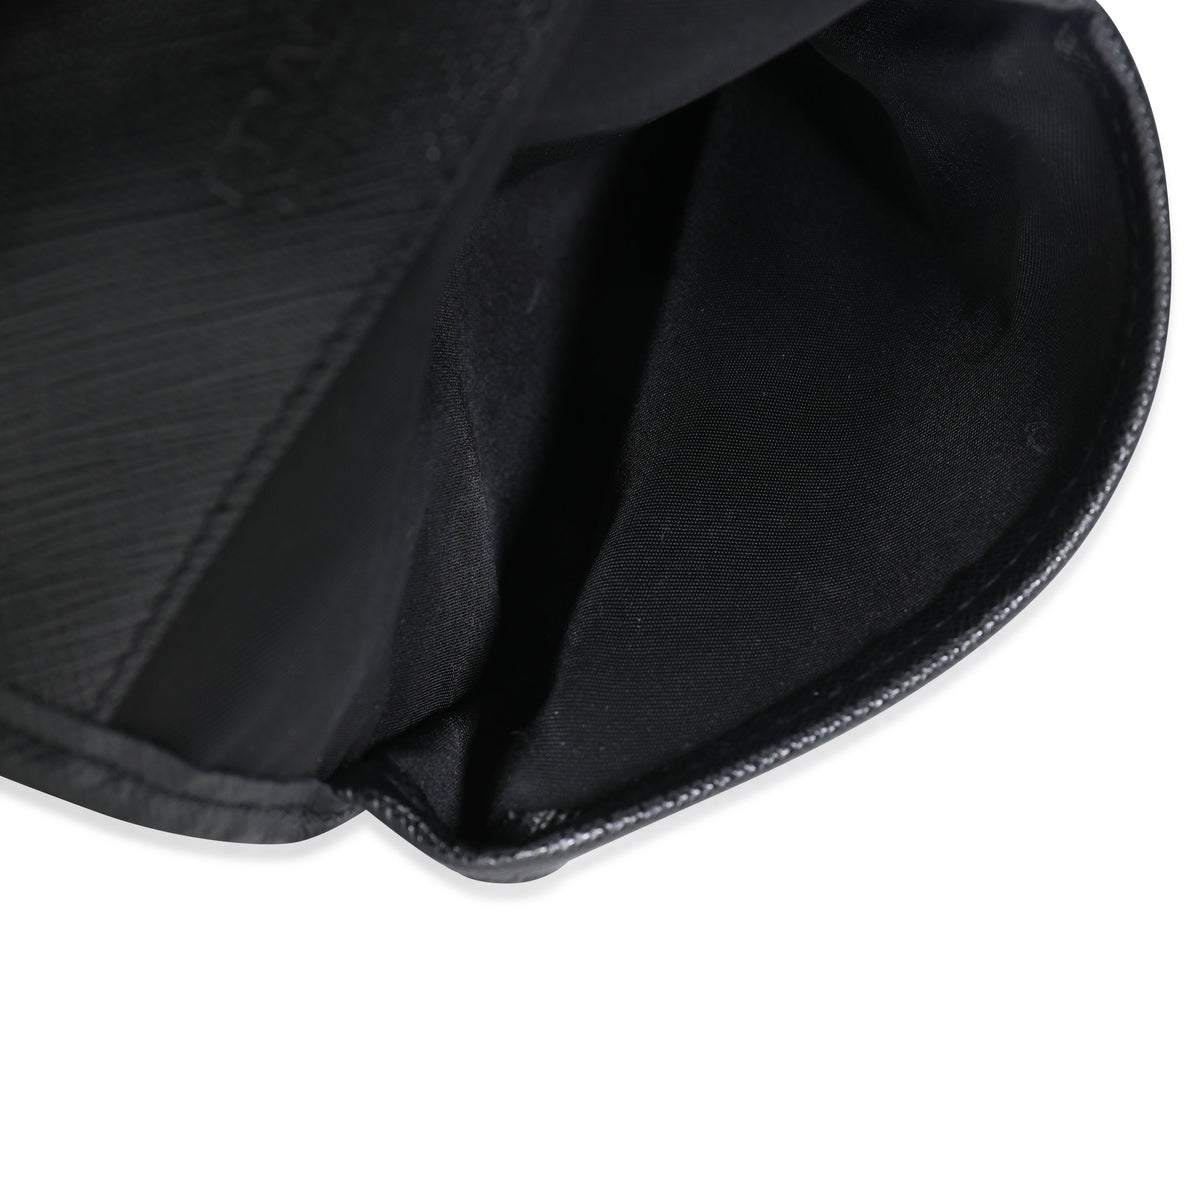 Black Re-nylon And Saffiano Leather Smartphone Case